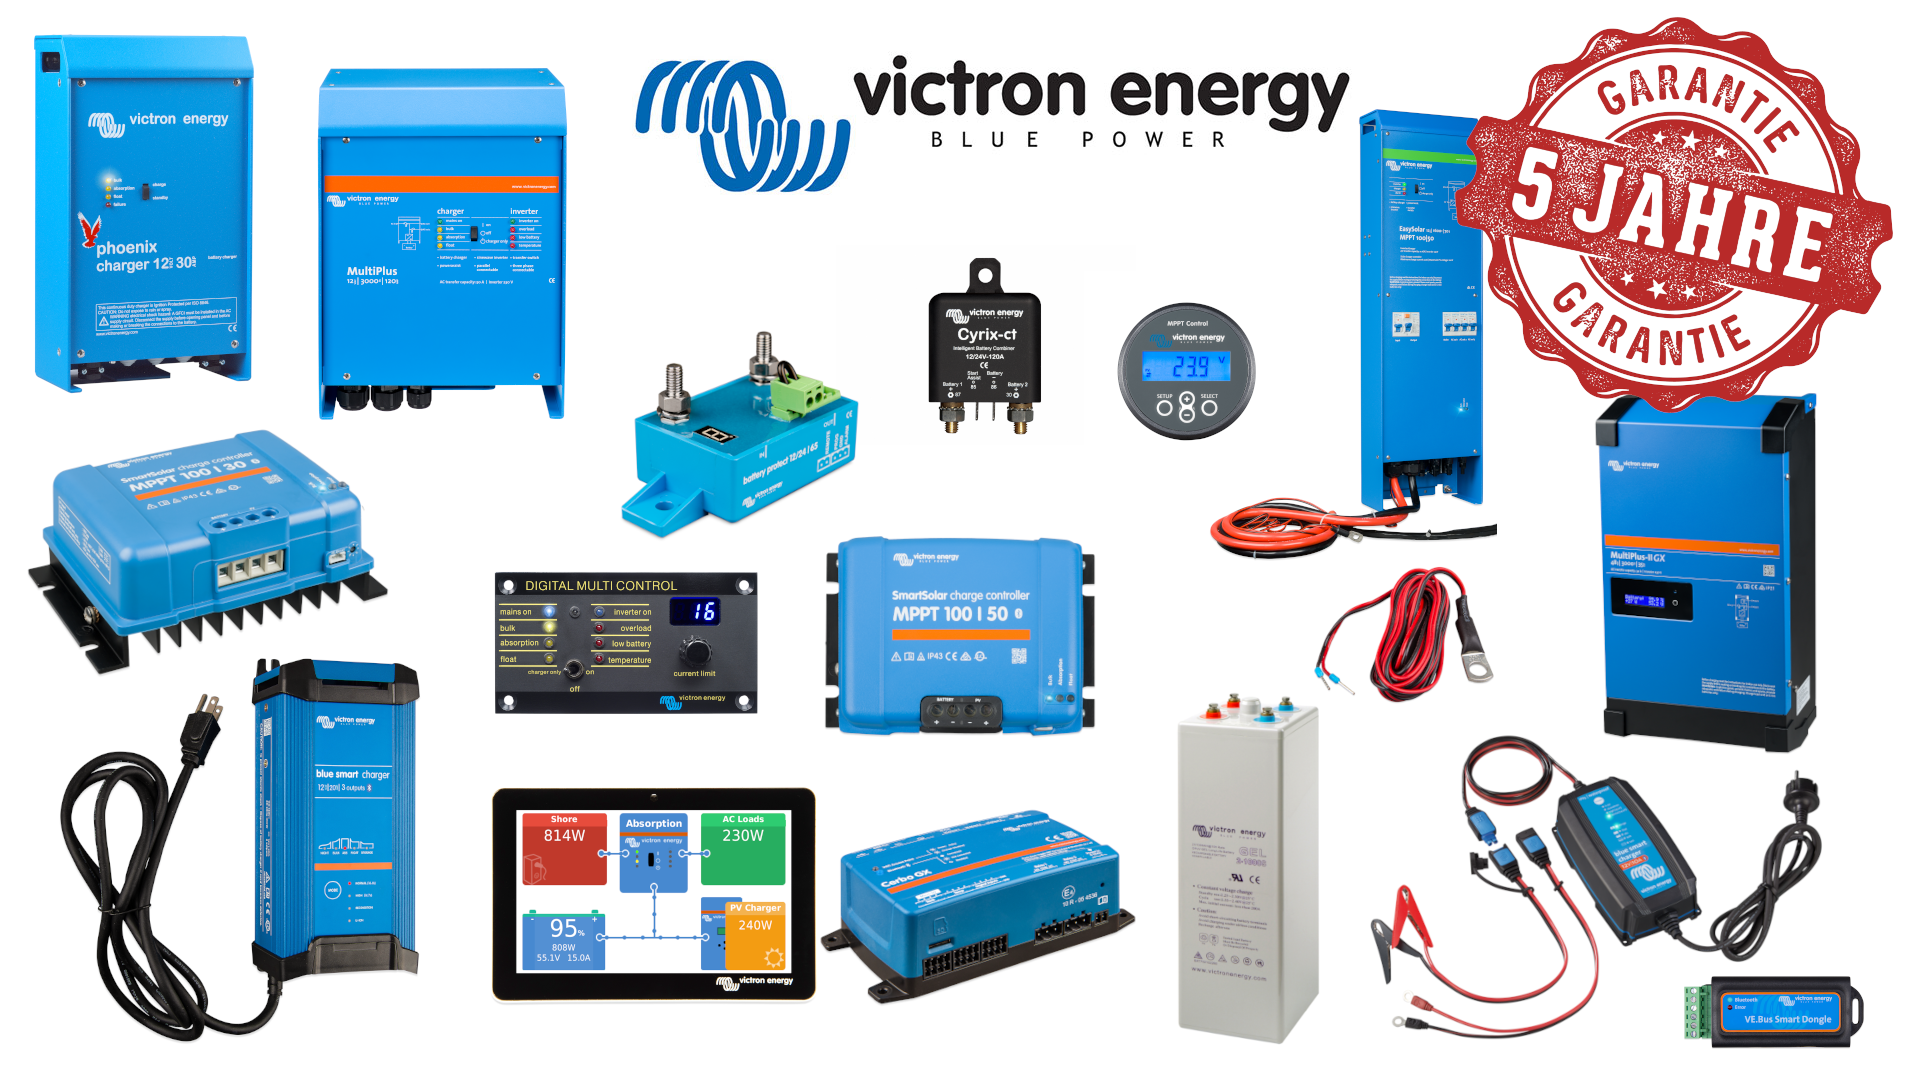 Victron energy Schweiz Vertrieb Hier finden Sie Produkte direkt von Victron Energy sowie Support und Schulungen, eine Werkstatt für Wohnmobile u.v.m. Lernen Sie von den Profis, wie Sie Victron Energy Produkte optimal nutzen können.